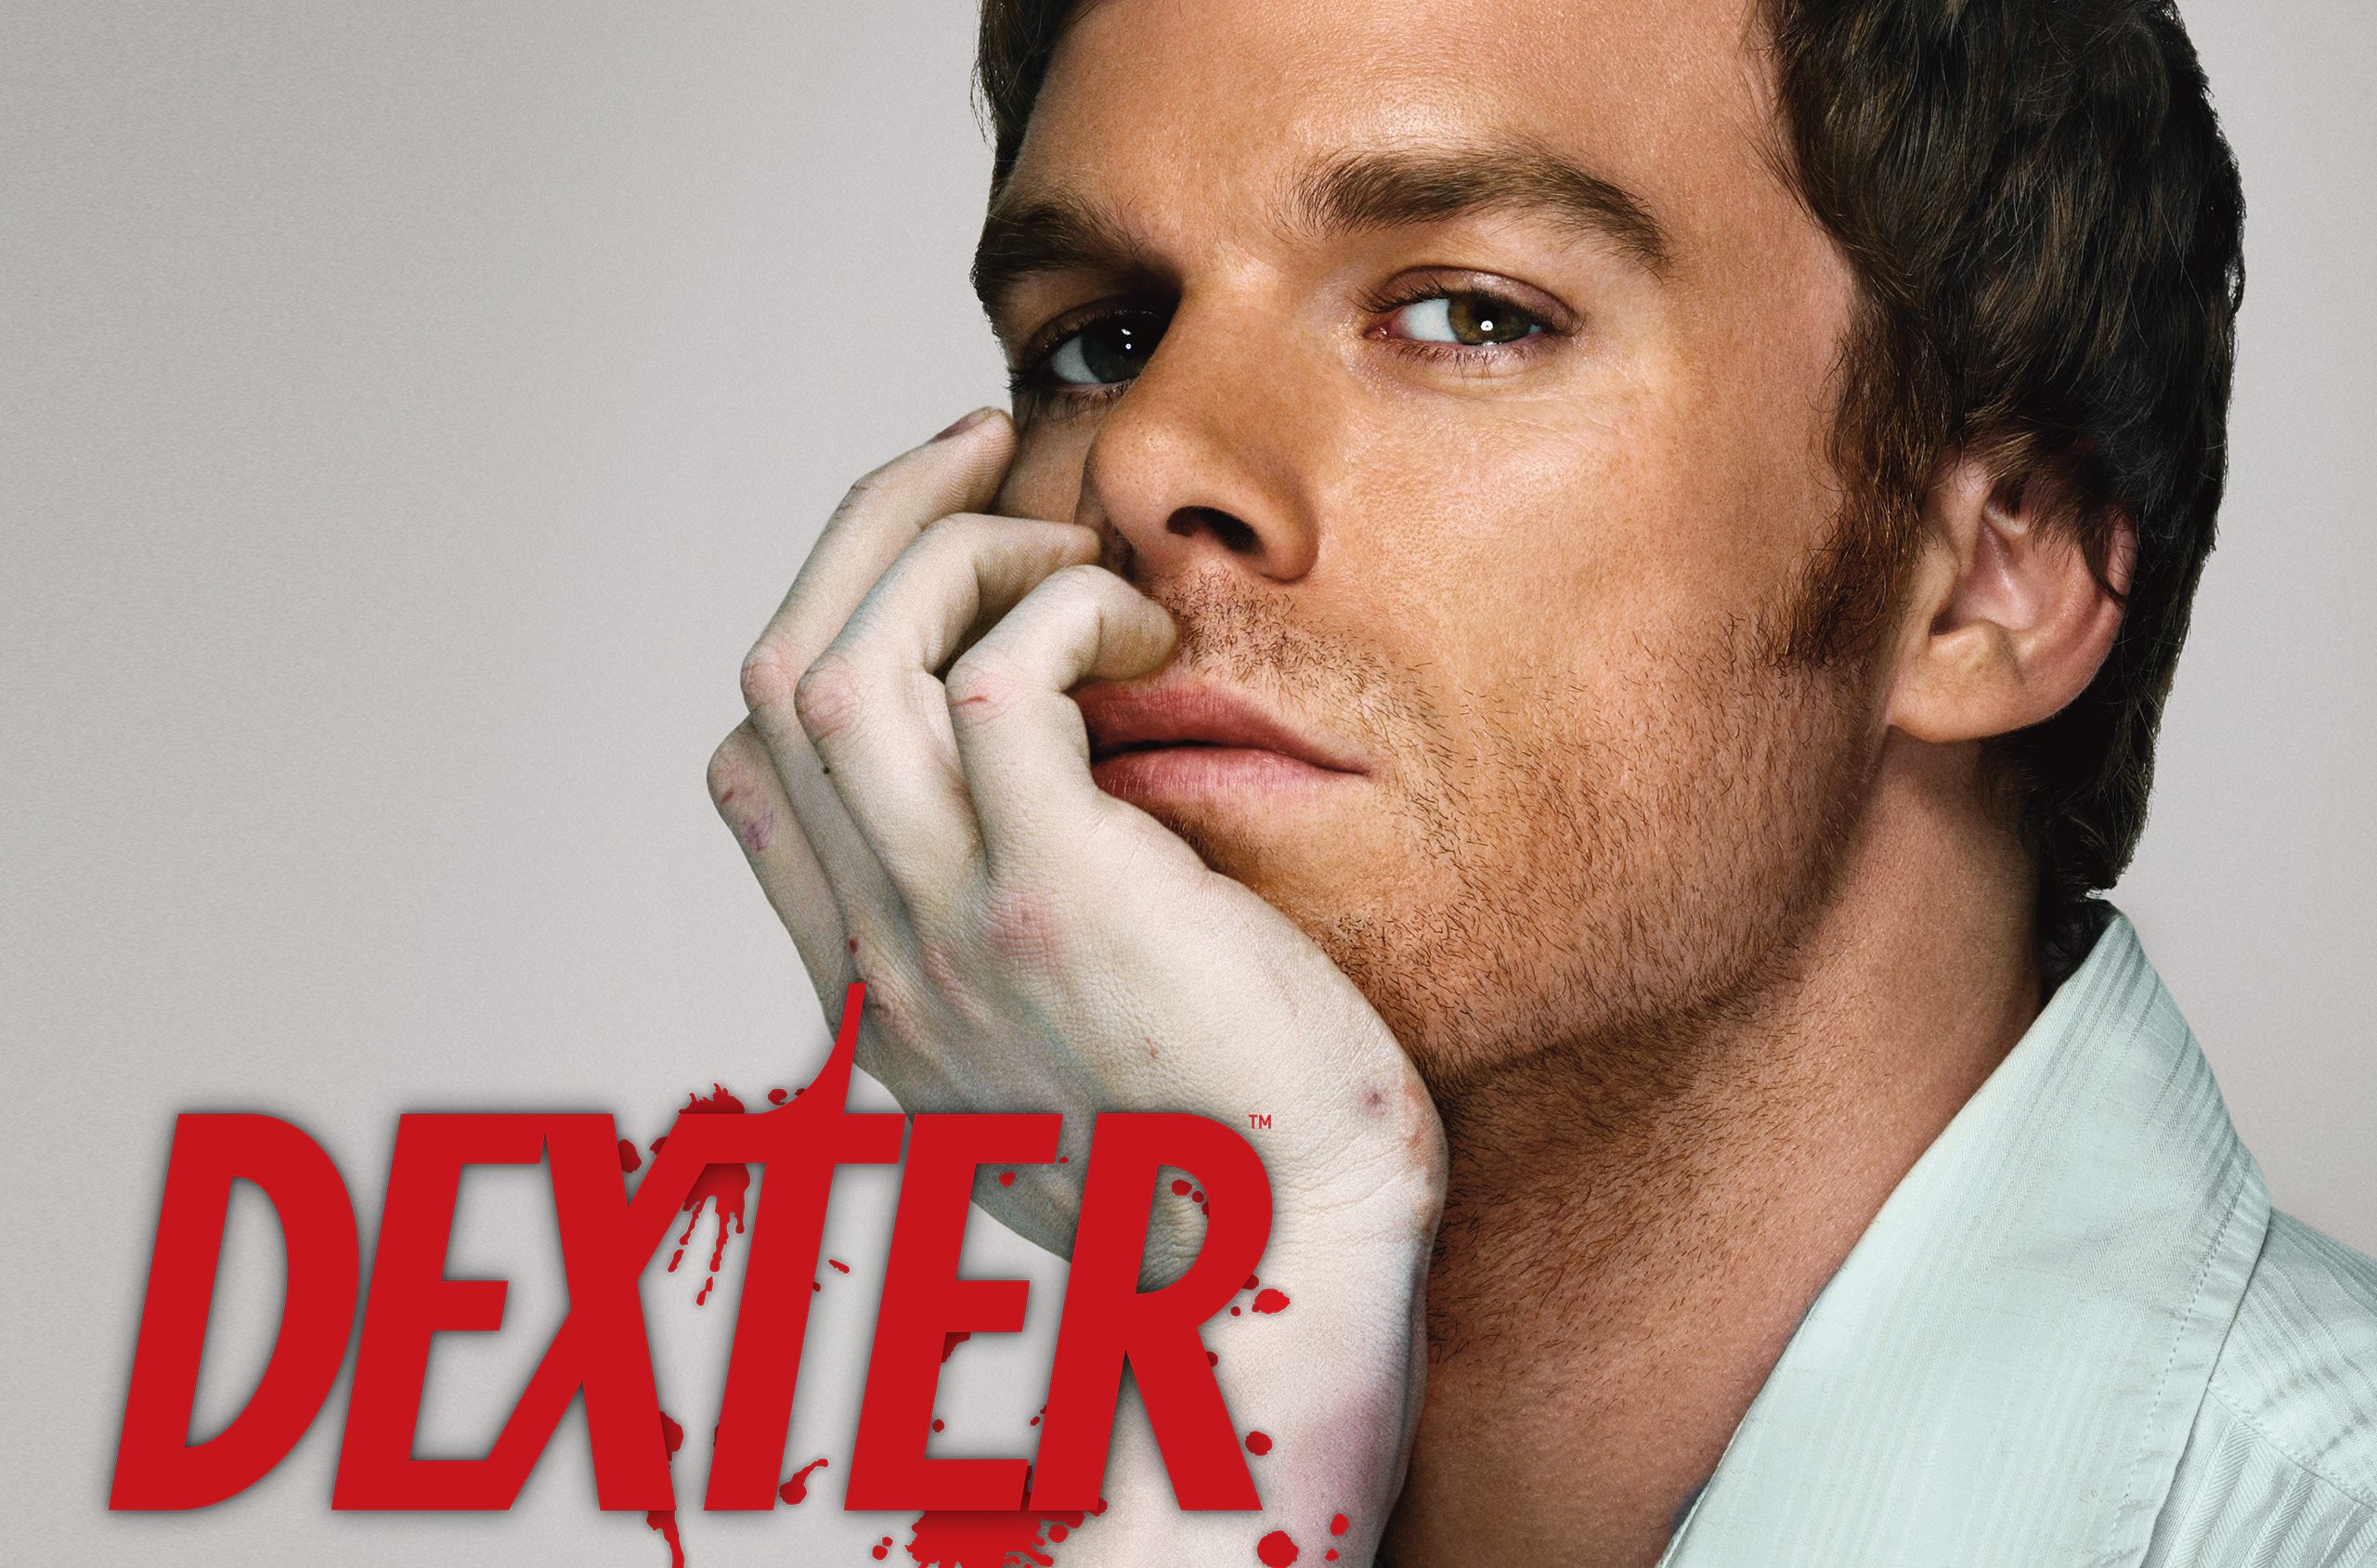 Dexter season 9 release date